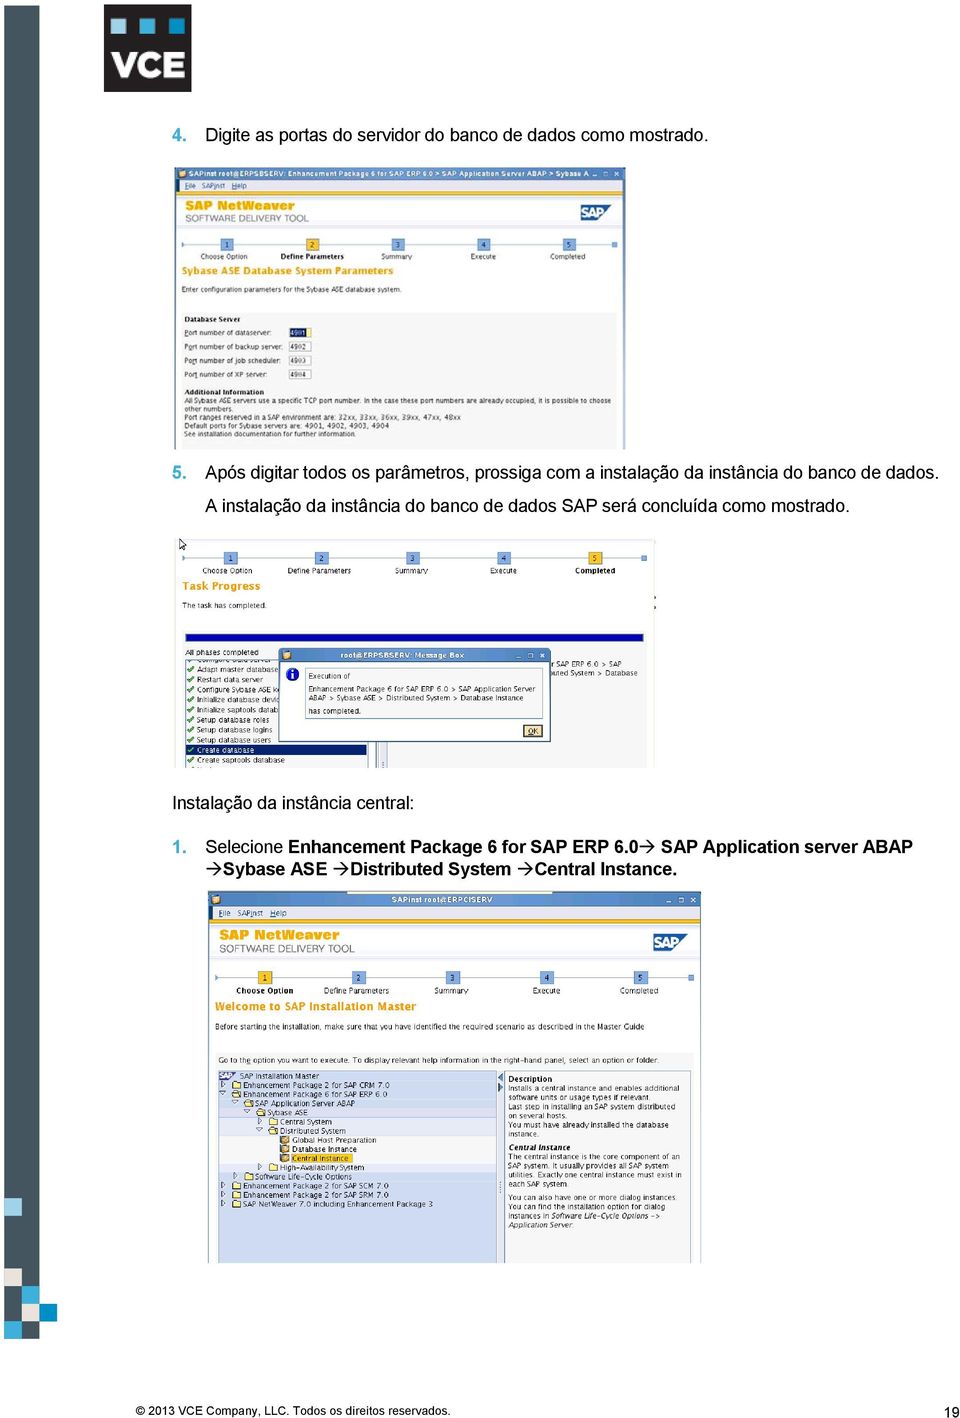 A instalação da instância do banco de dados SAP será concluída como mostrado.